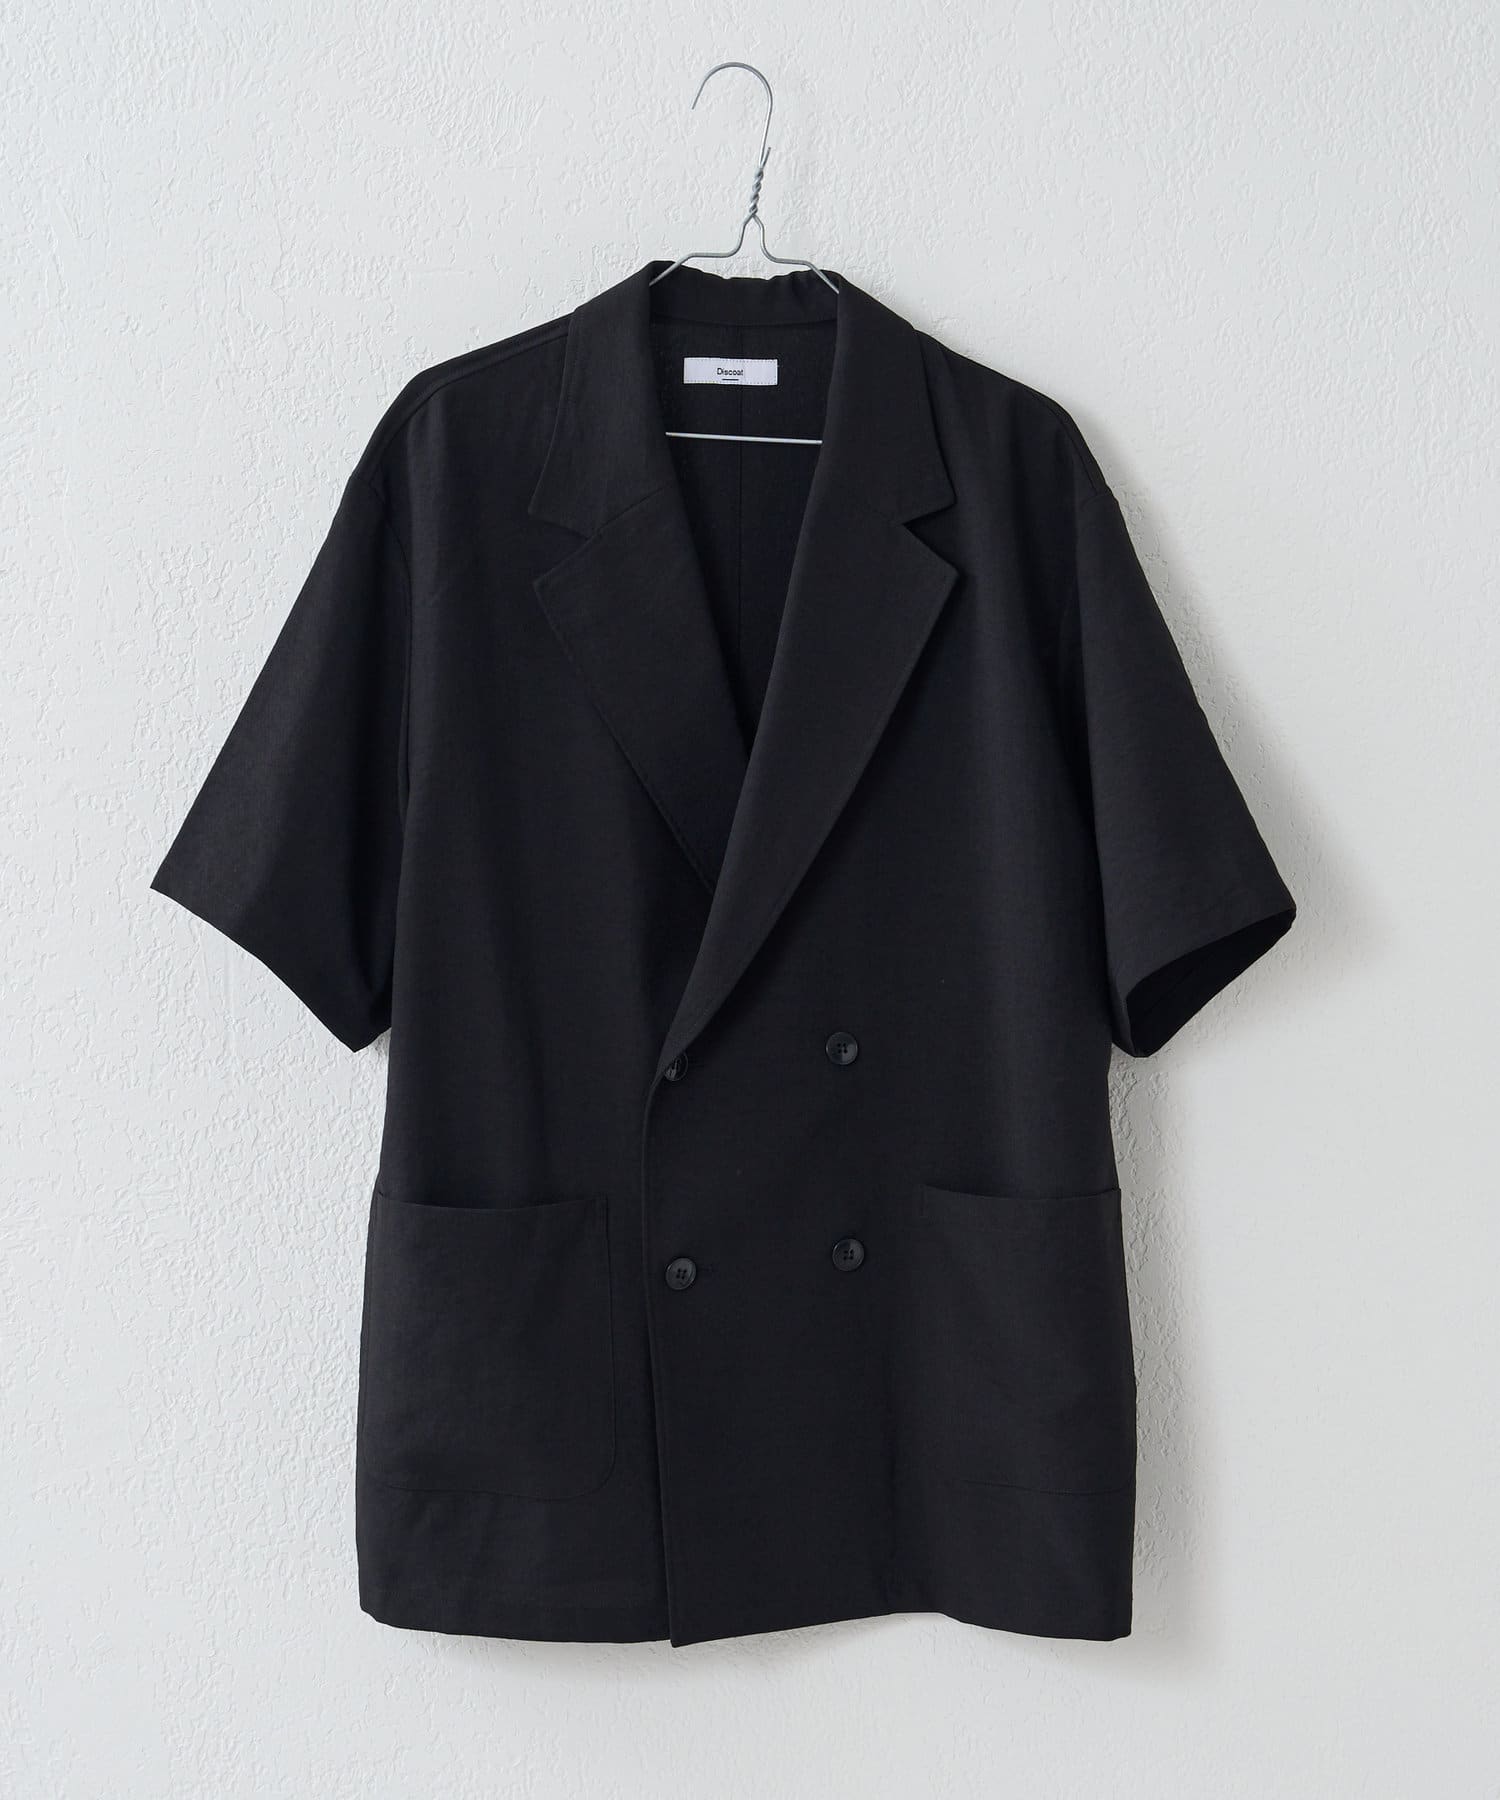 Discoat(ディスコート) テックリネンWブレスト半袖シャツジャケット